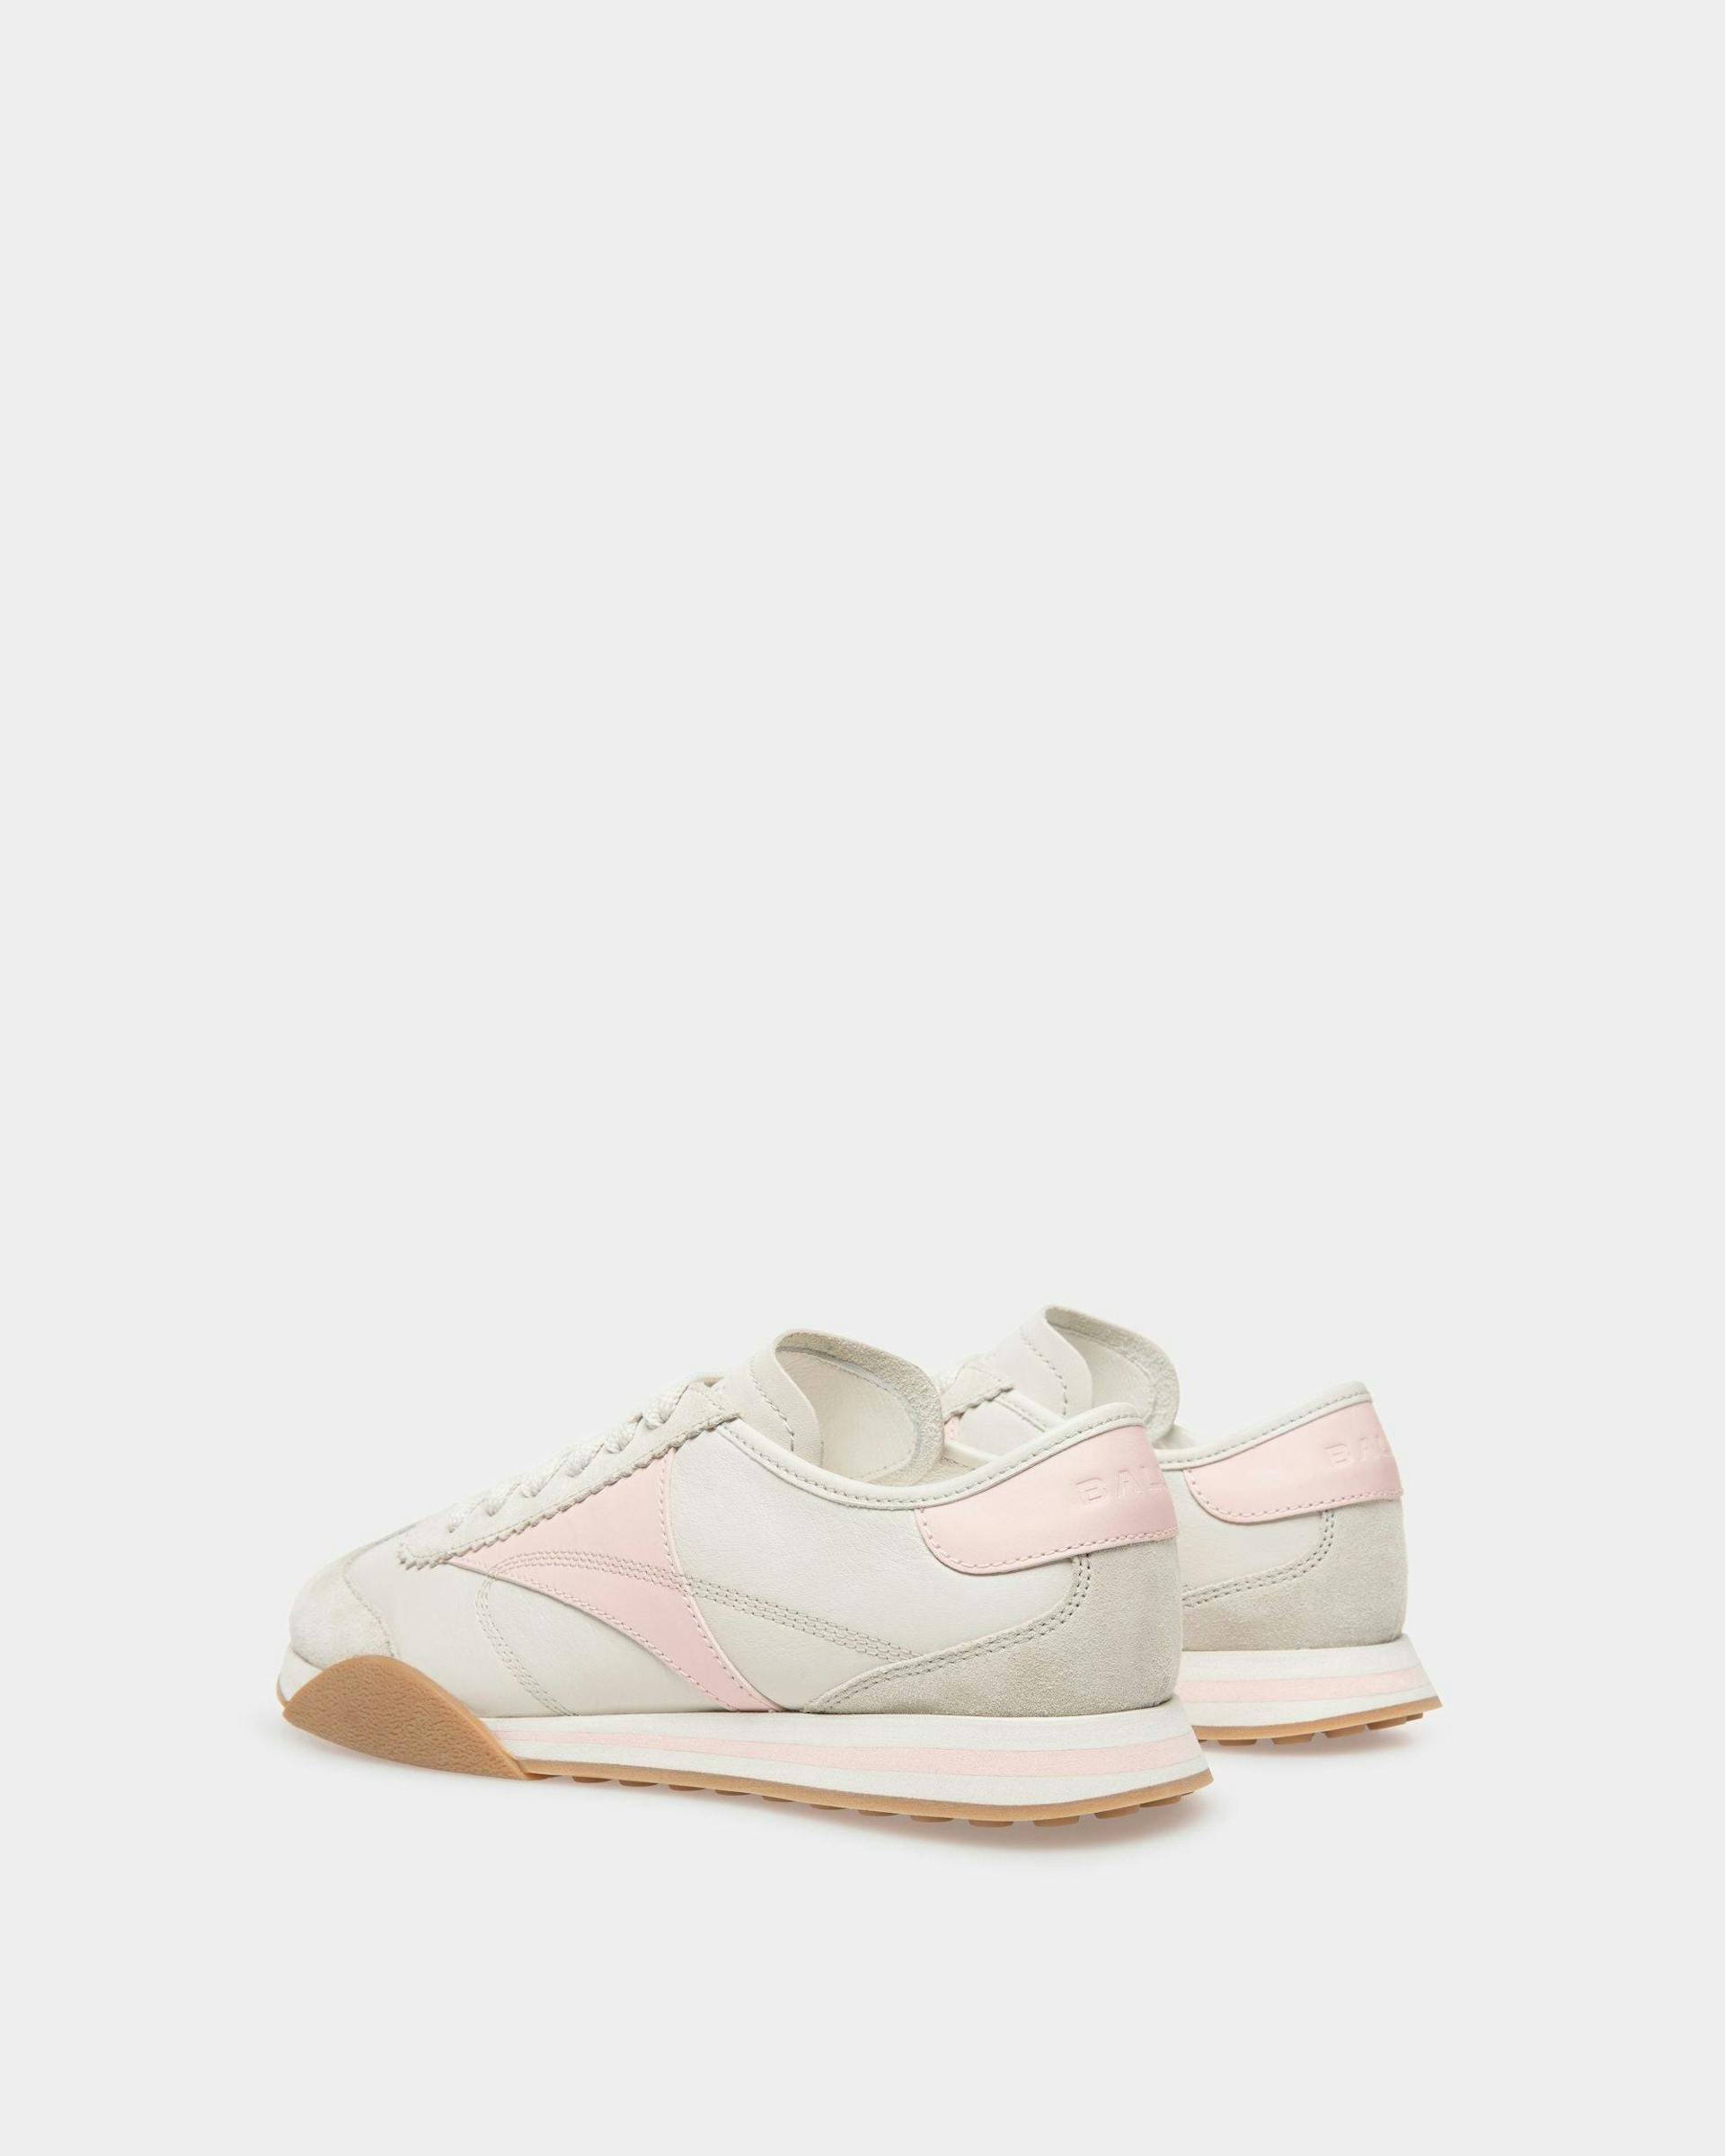 Sneakers Sussex En cuir blanc poussière et rose - Femme - Bally - 03